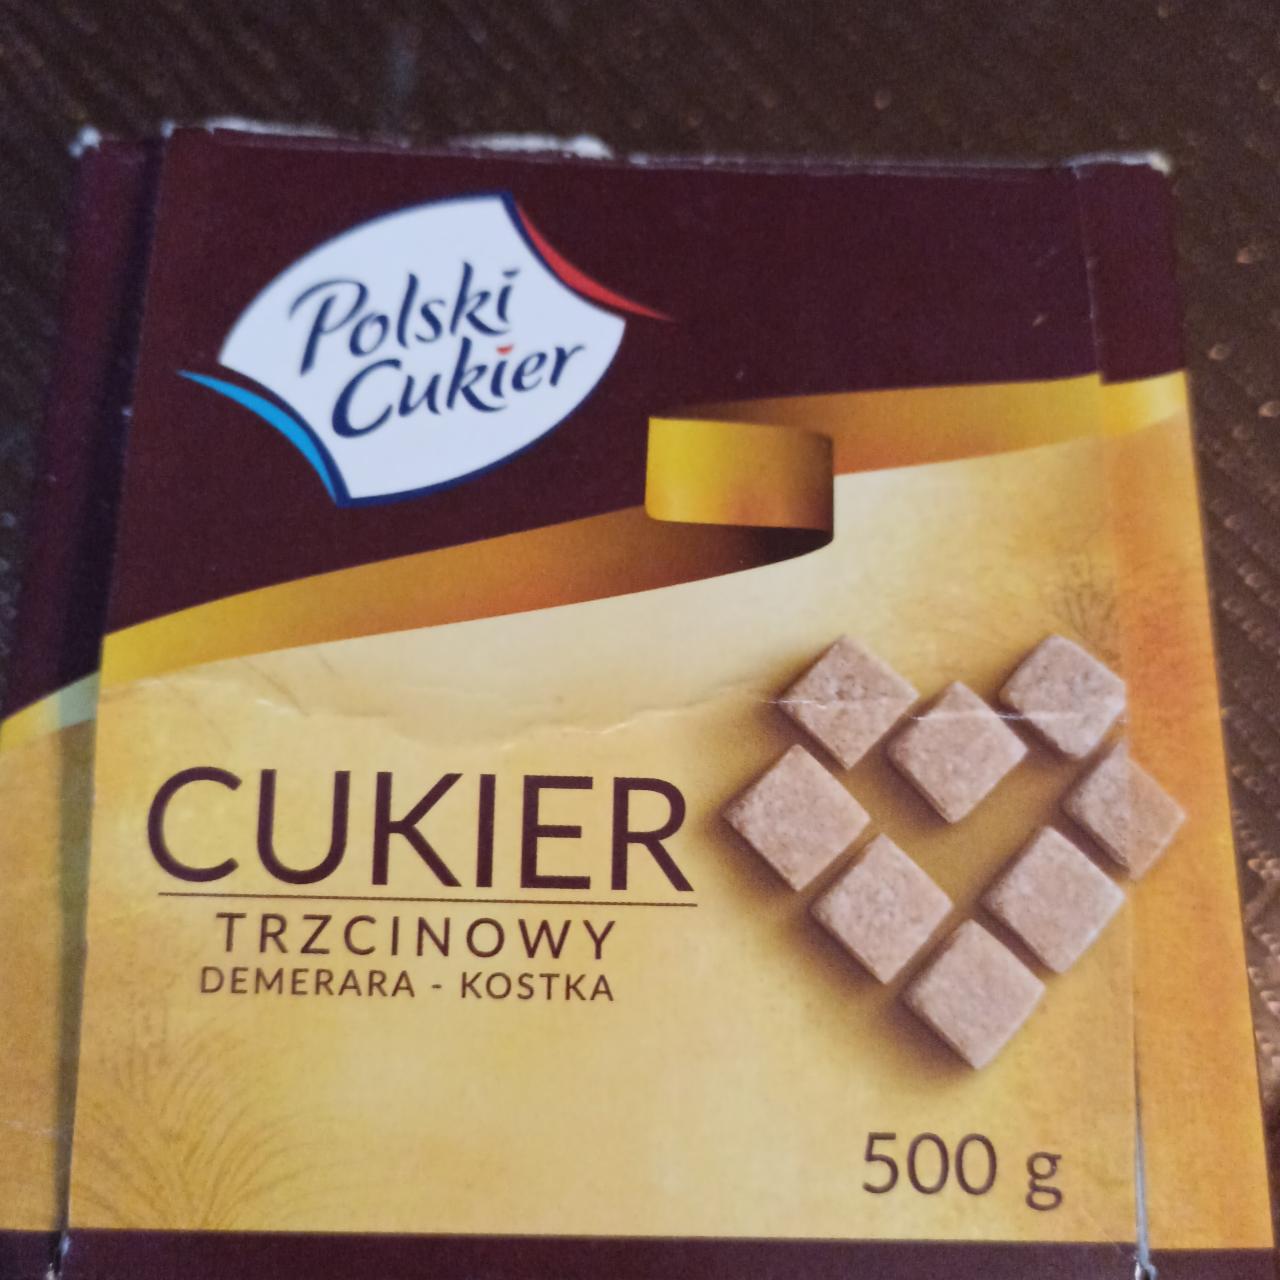 Zdjęcia - Polski Cukier Cukier trzcinowy Demerara kostka 500 g